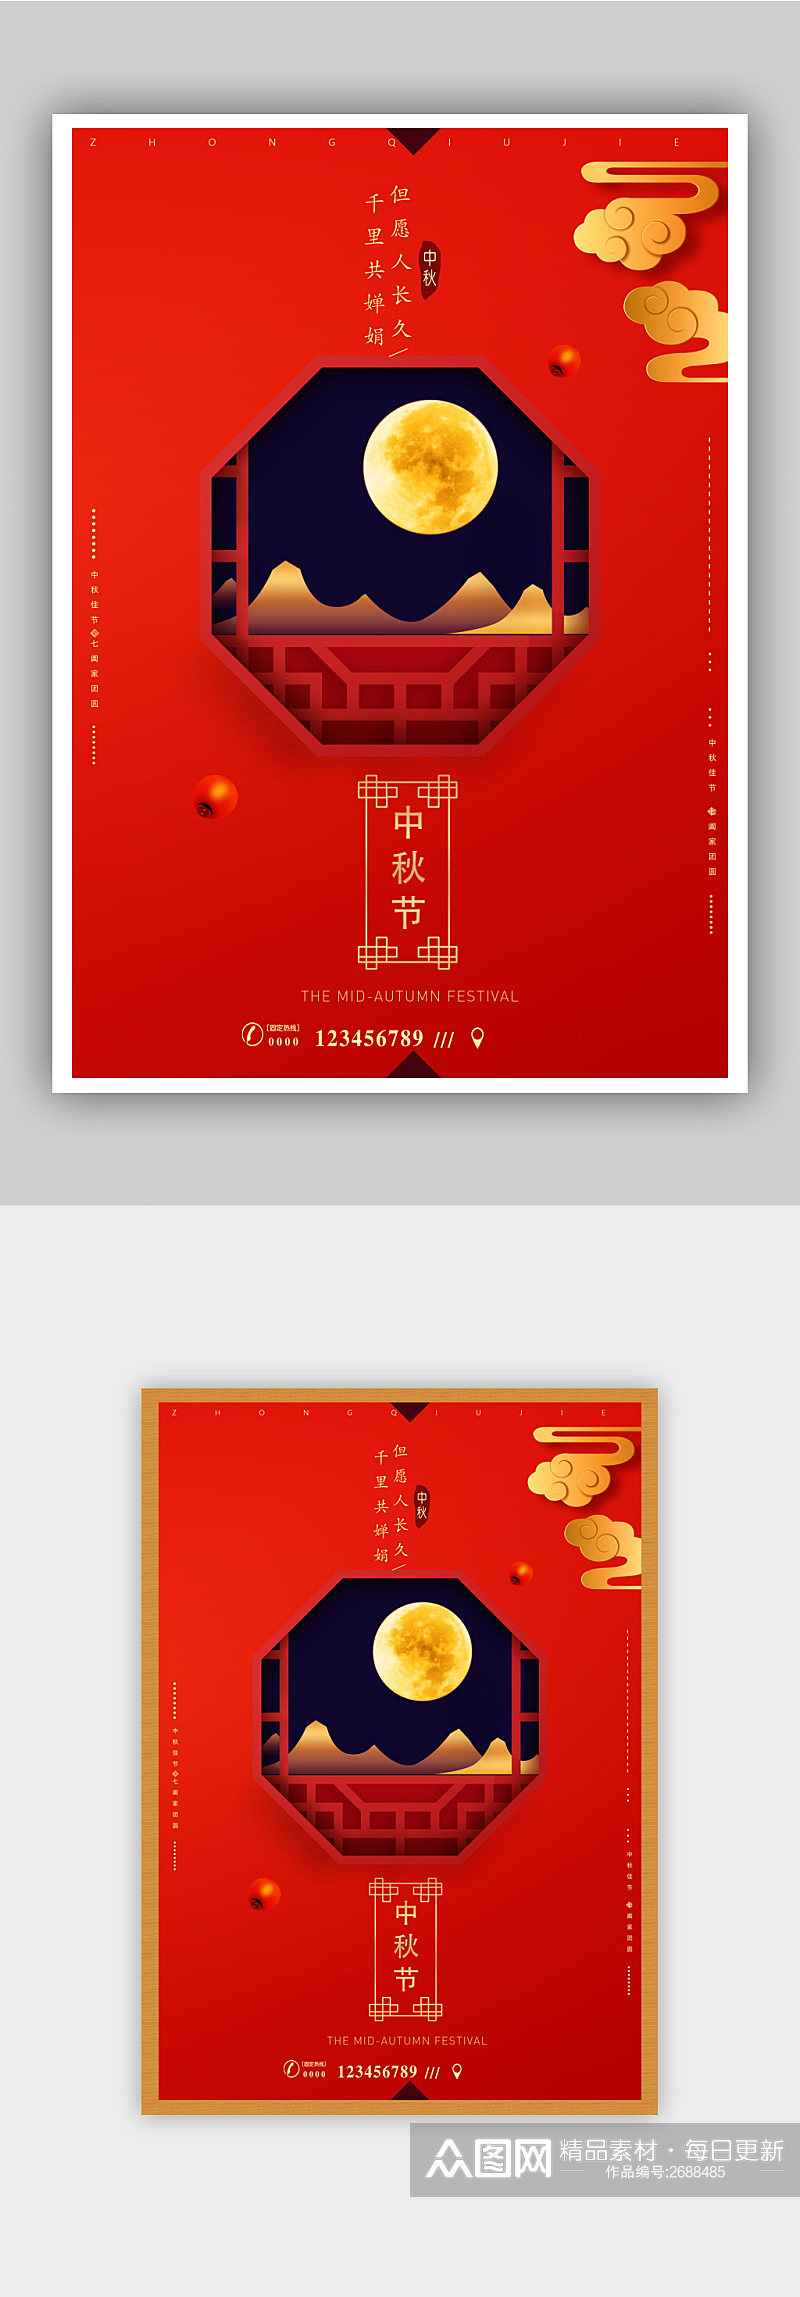 红色精美中秋节活动海报素材